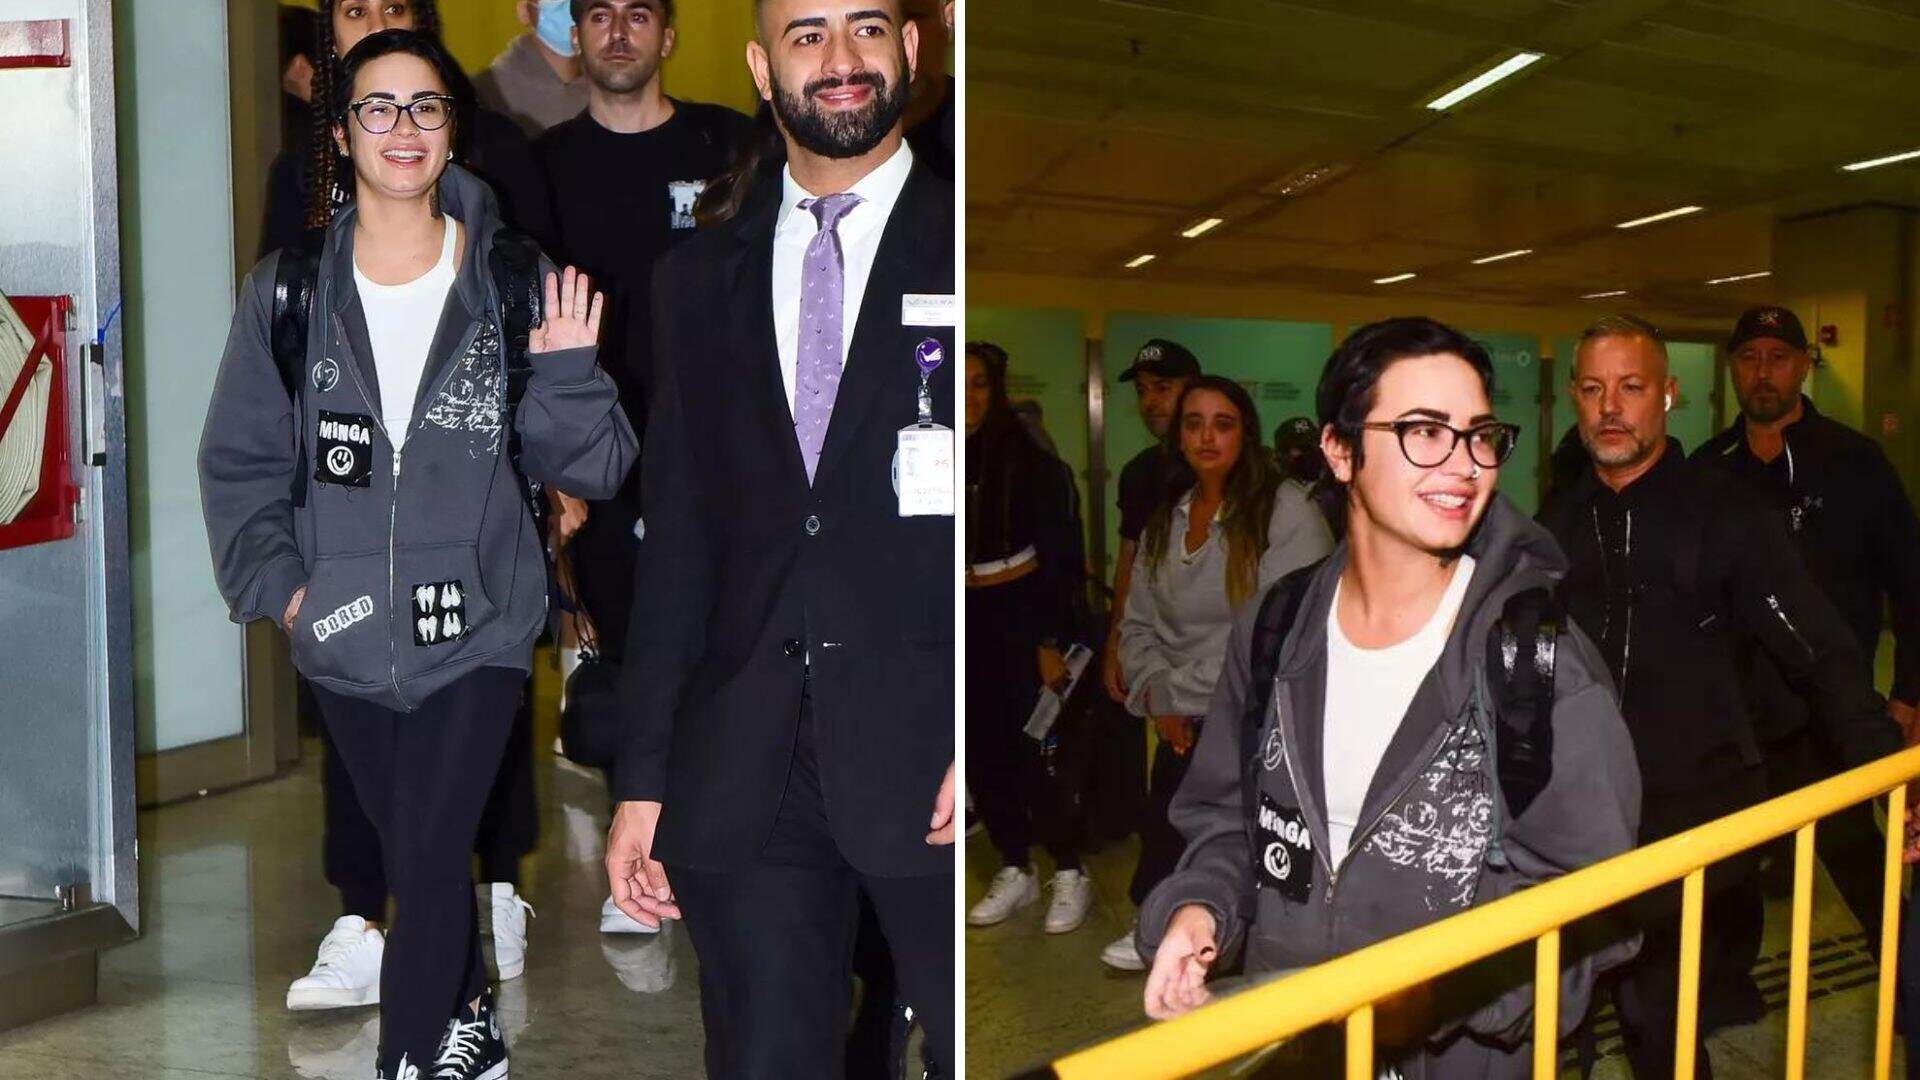 Chegou no Brasil! Demi Lovato desembarca em São Paulo para shows - Metropolitana FM